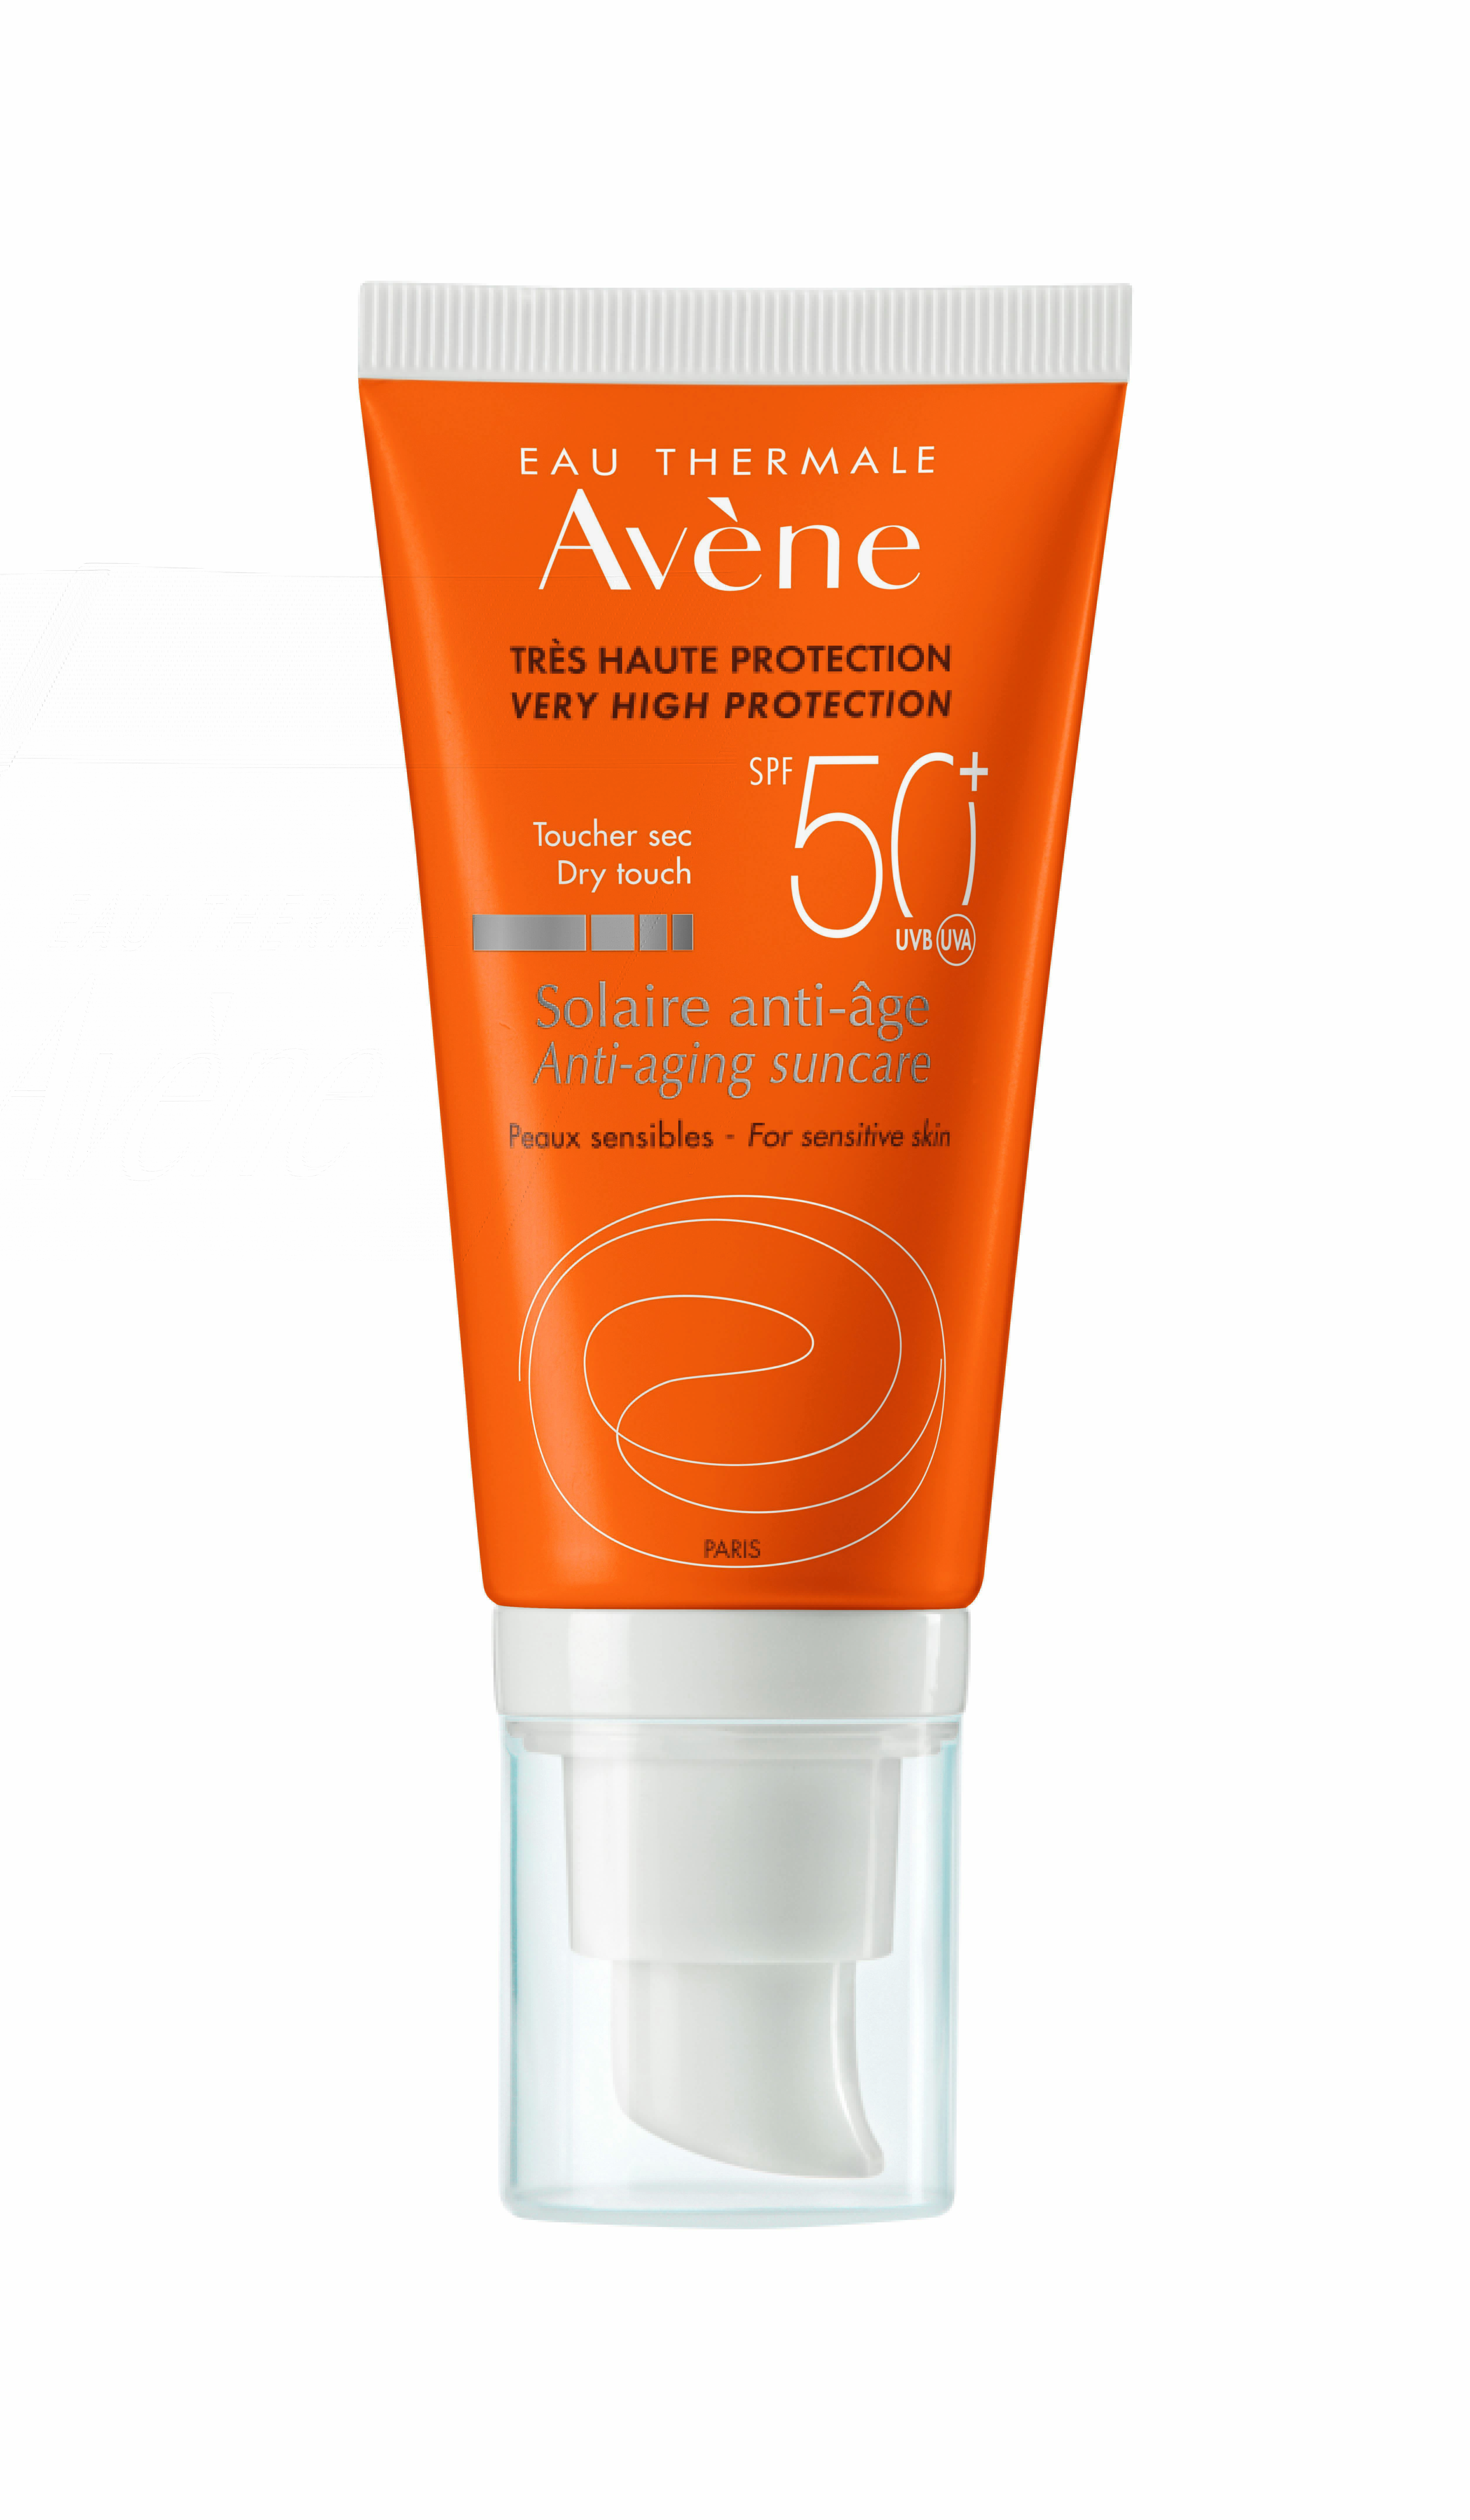 Crema protectie solara Avene B-Protect SPF 50+, 30 ml, Pierre Fabre